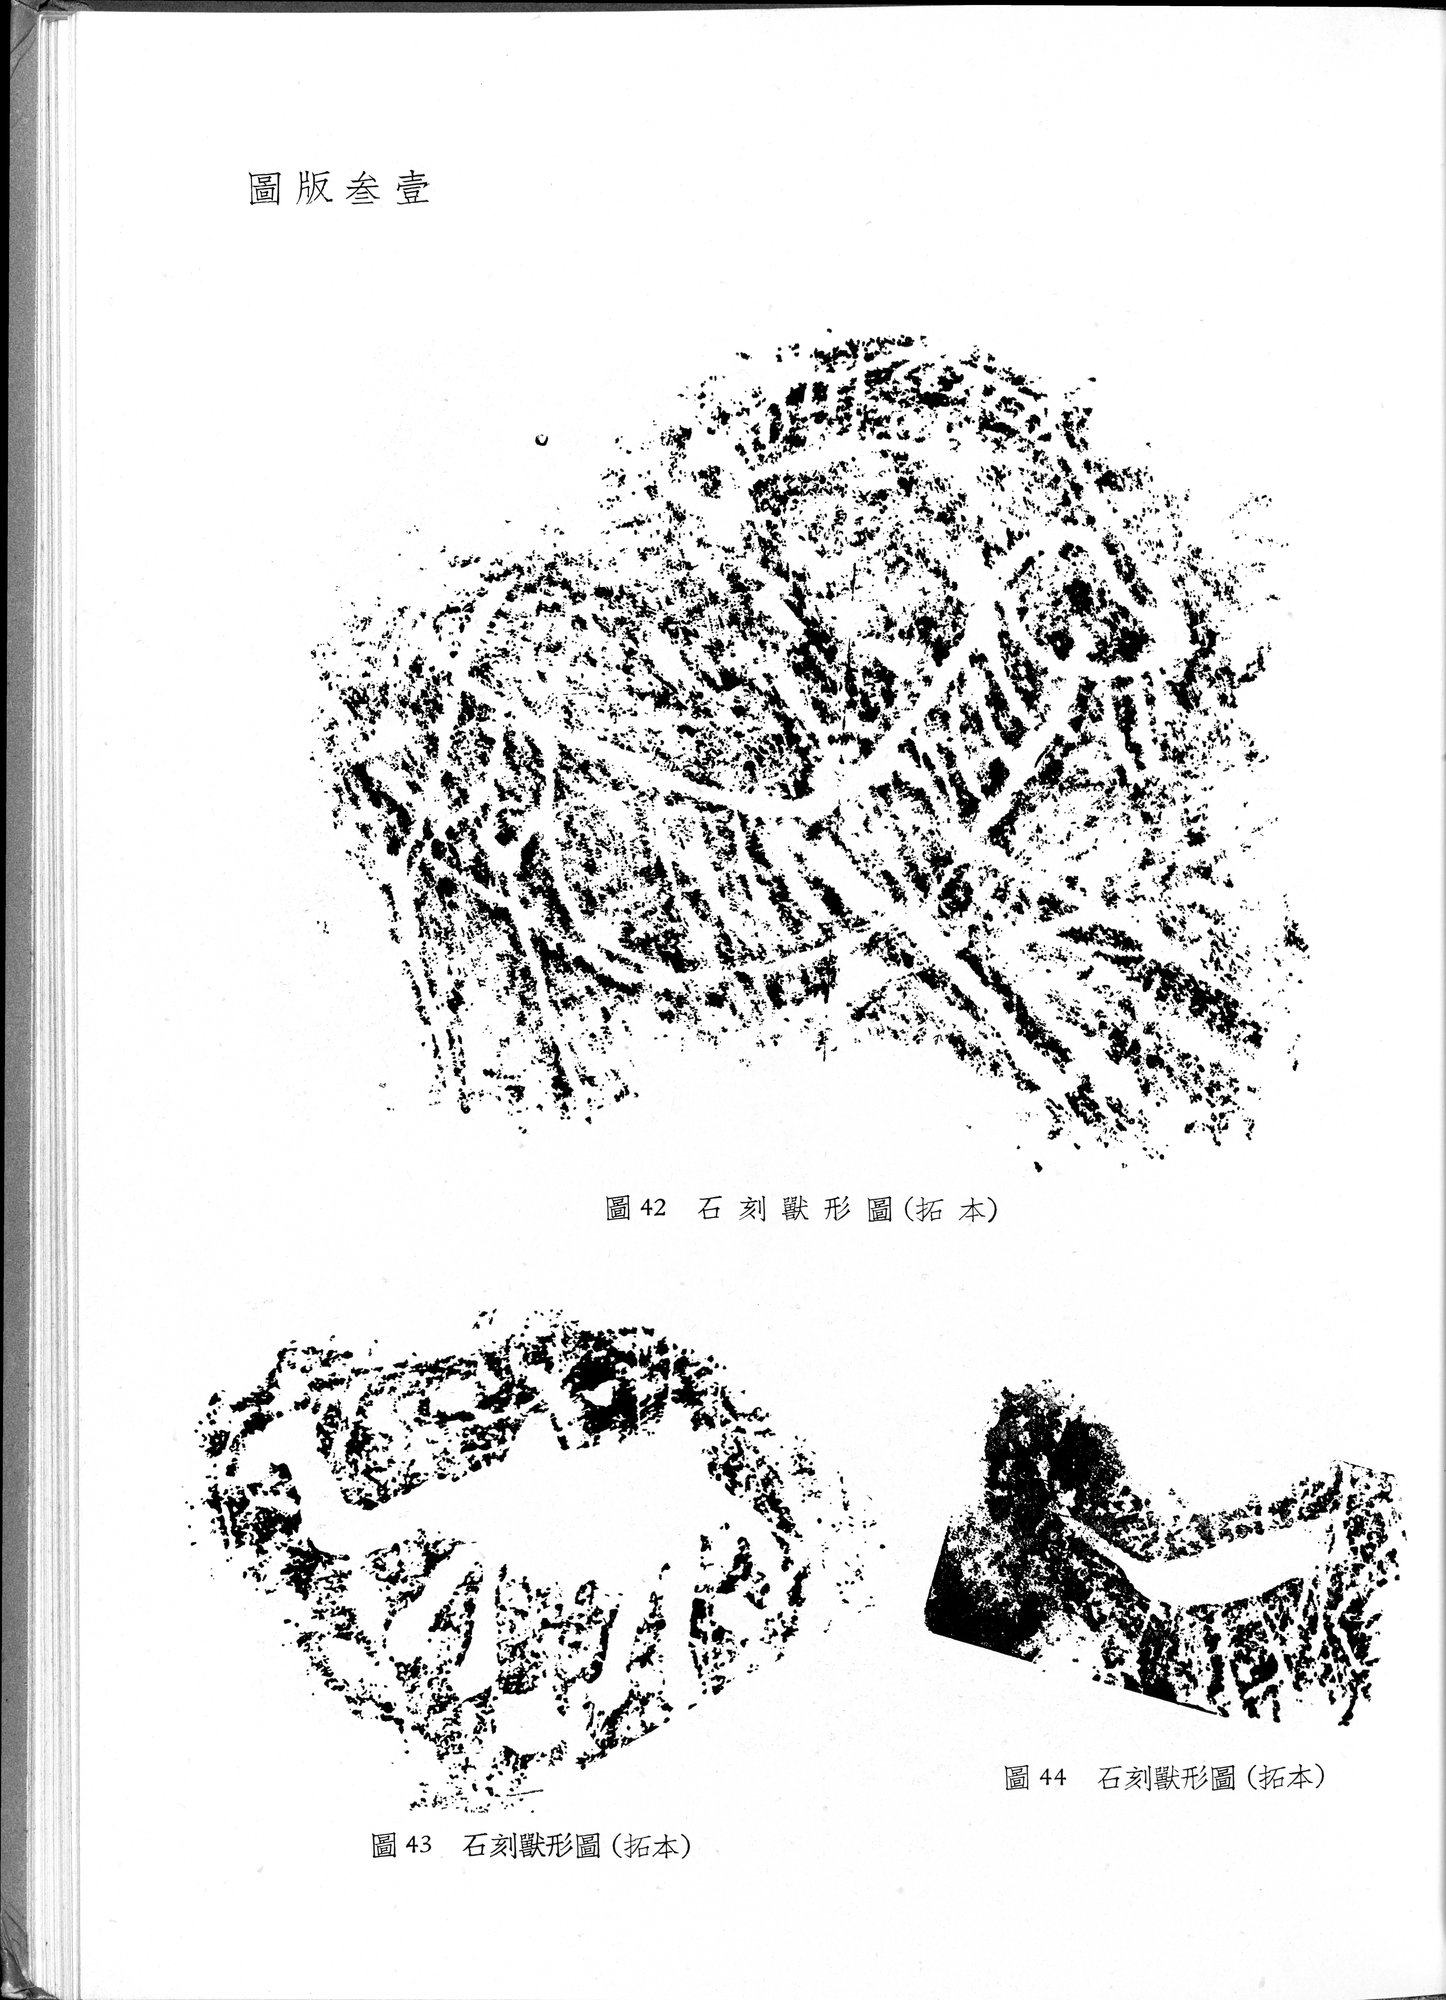 塔里木盆地考古記 : vol.1 / Page 251 (Grayscale High Resolution Image)